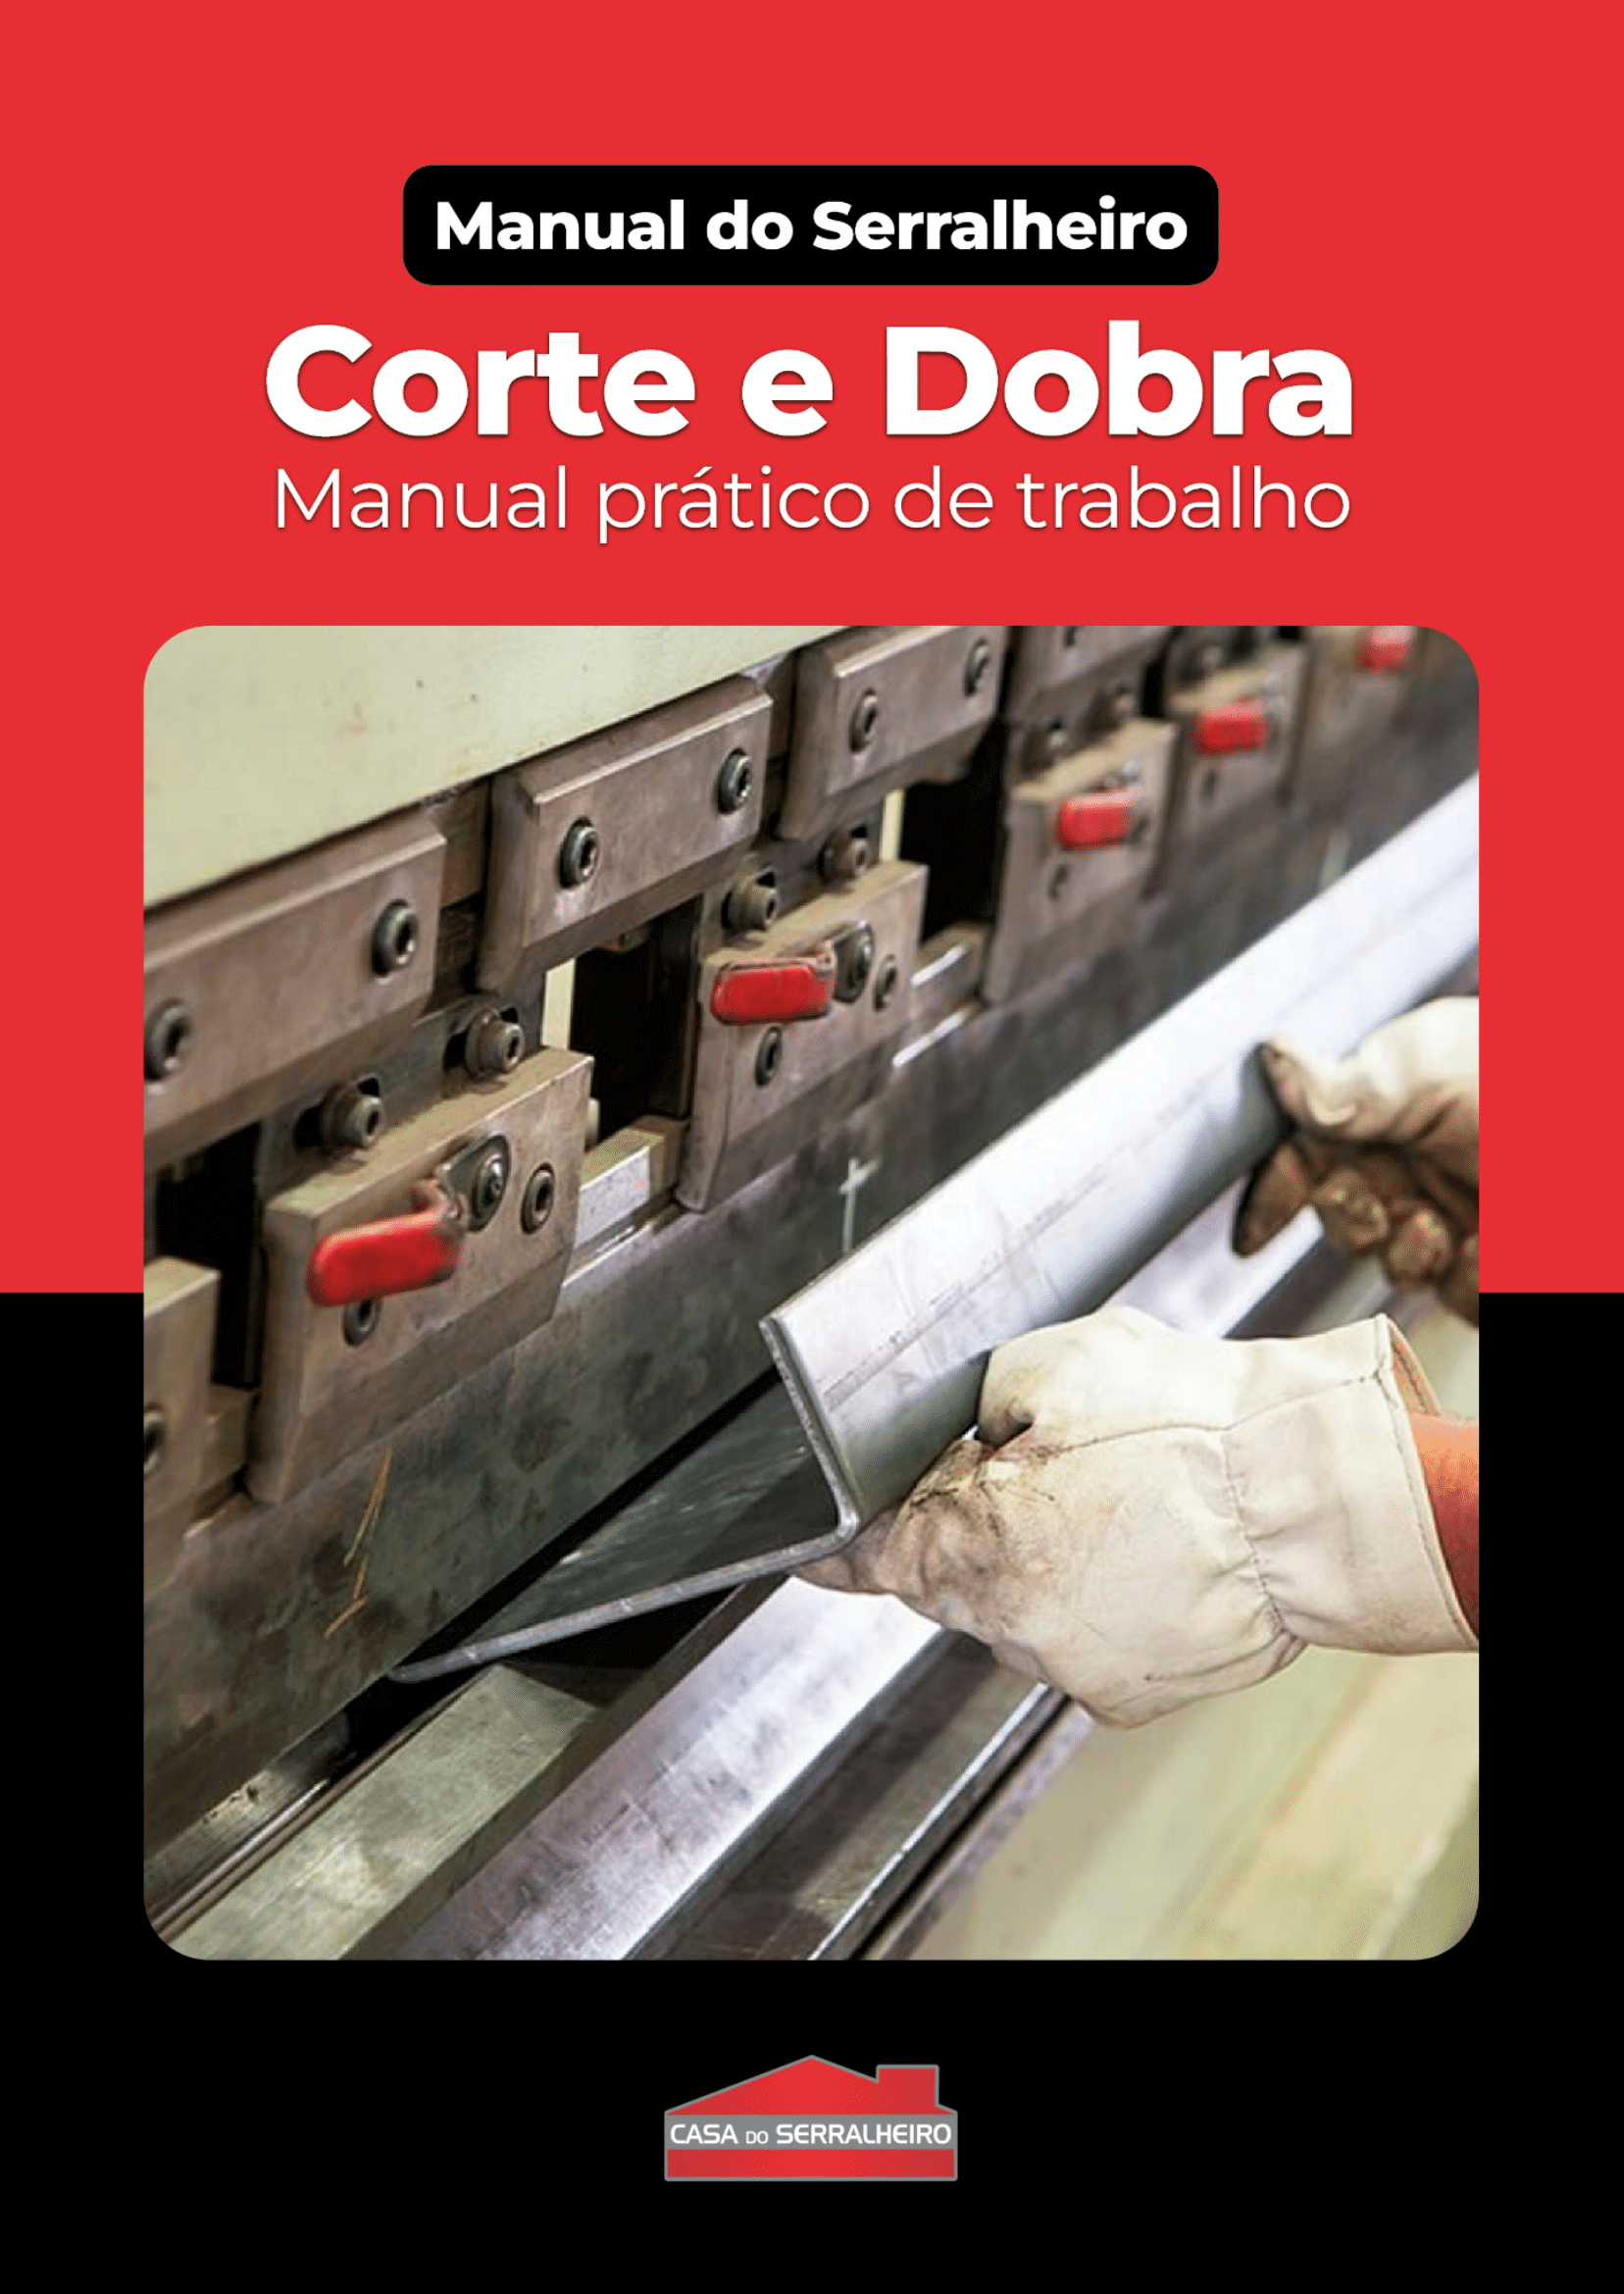 Casa do Serralheiro Materiais Ebook Manual do Serralheiro Corte e Dobra manual pratico de trabalho